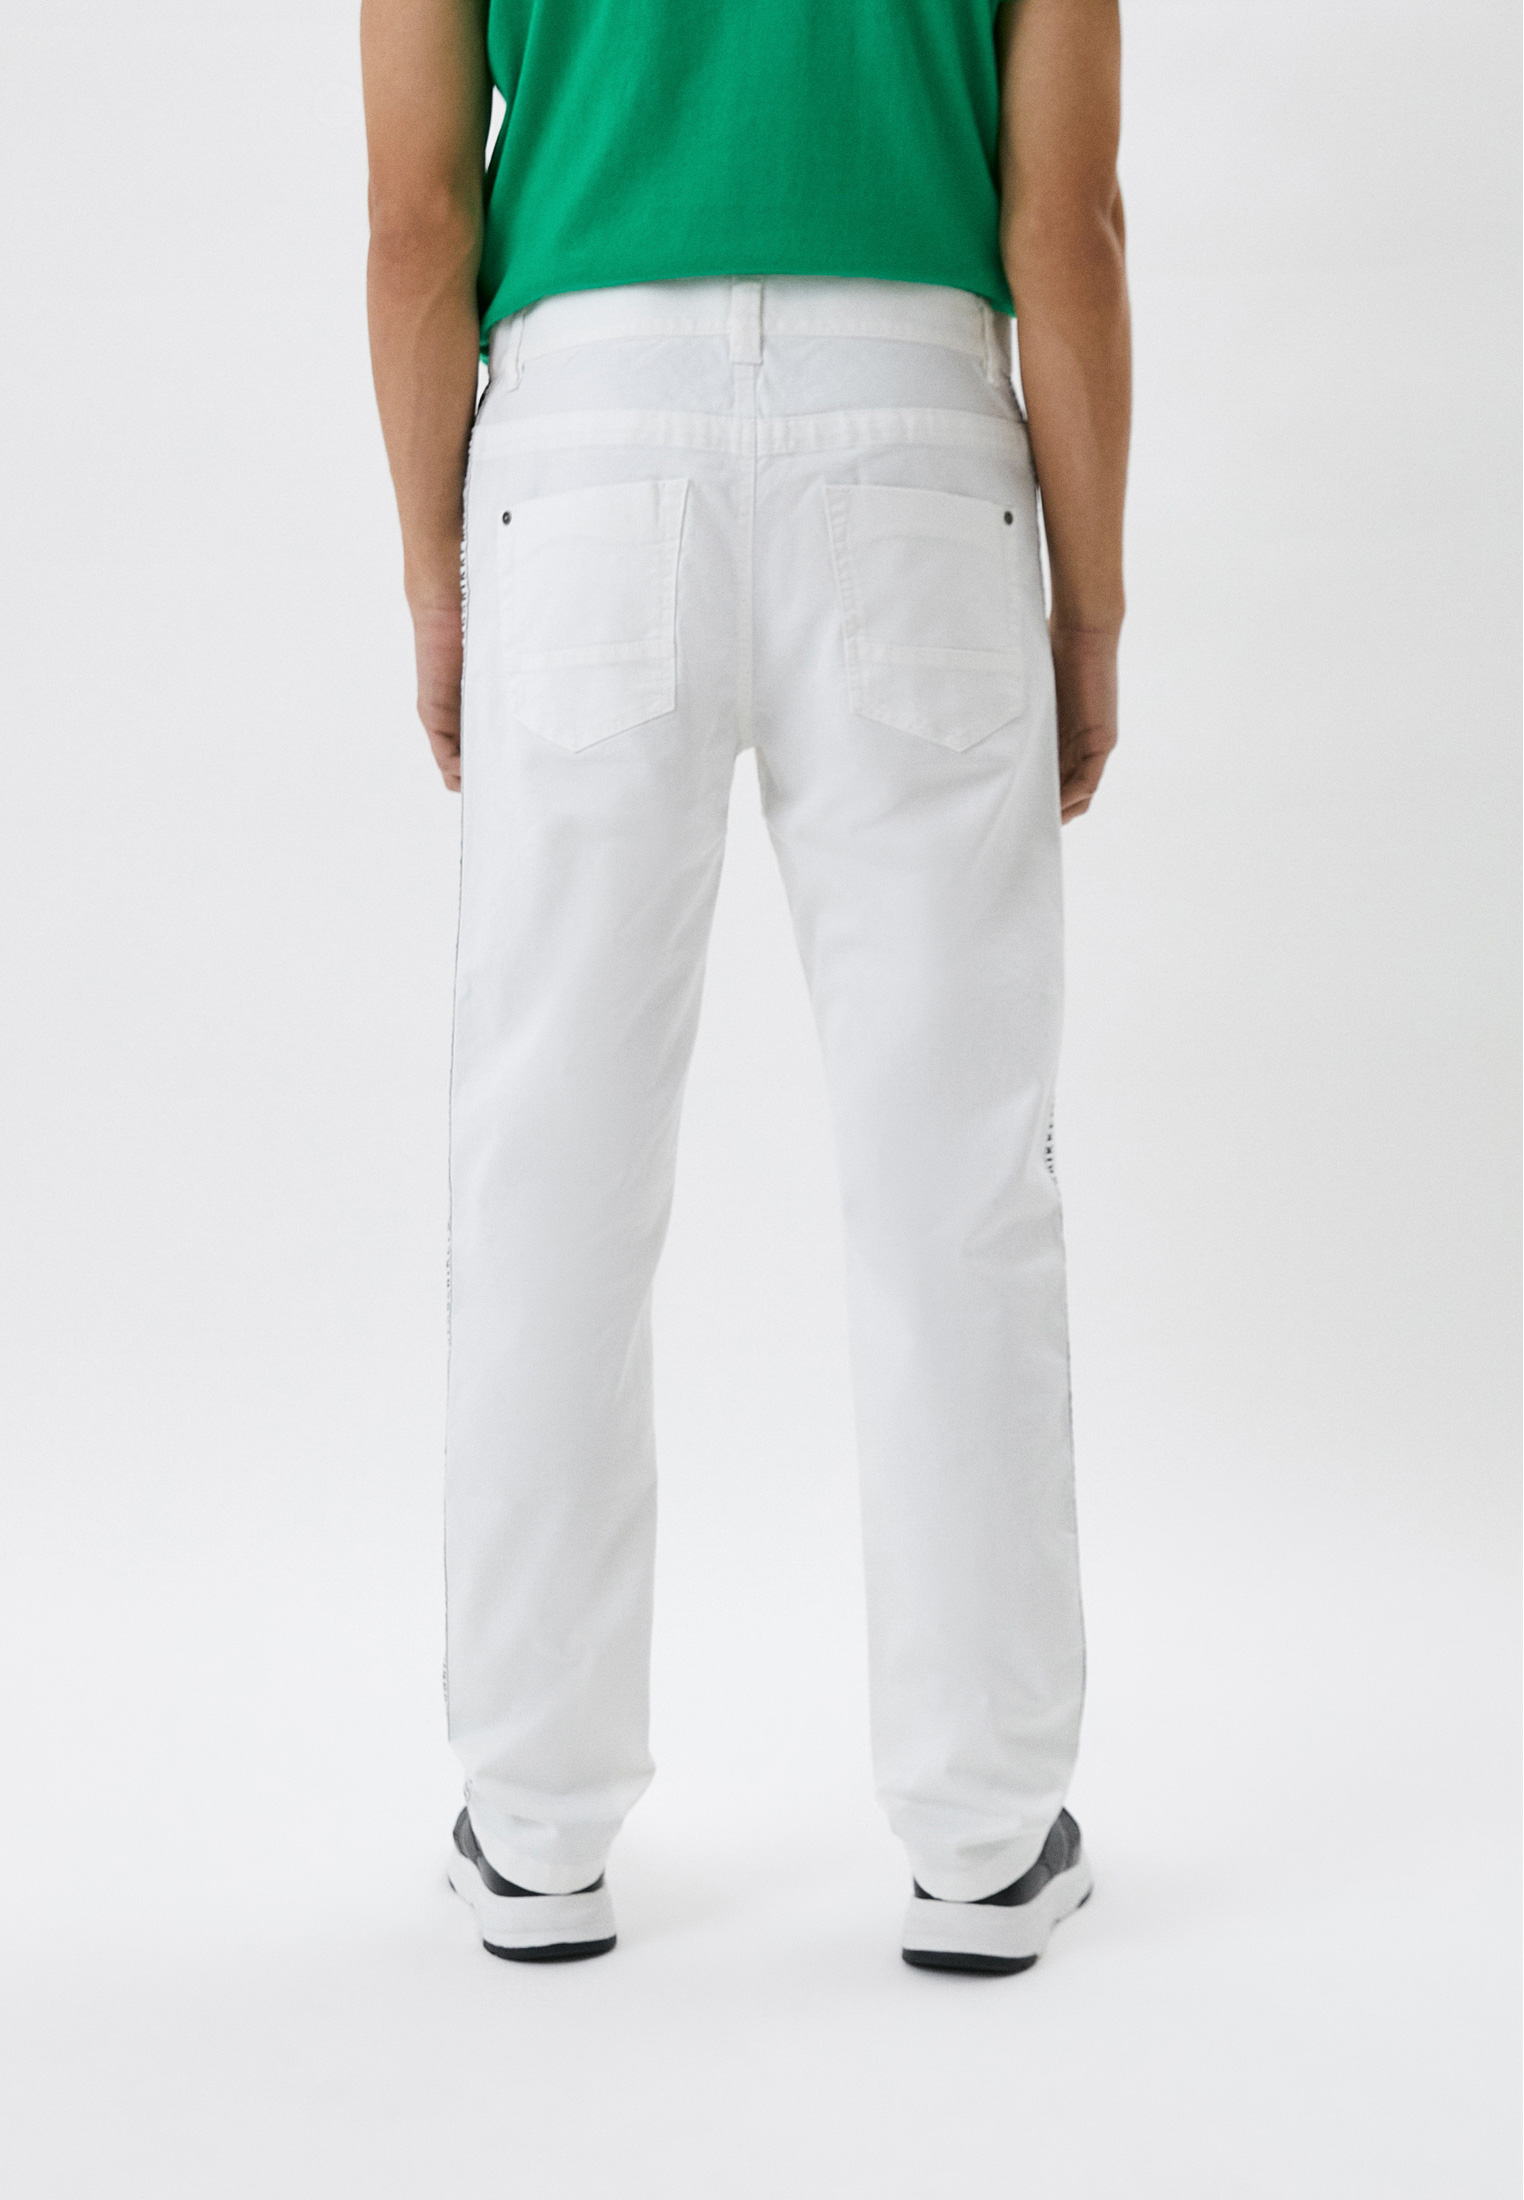 Мужские прямые джинсы Bikkembergs (Биккембергс) CQ10280S3394: изображение 3